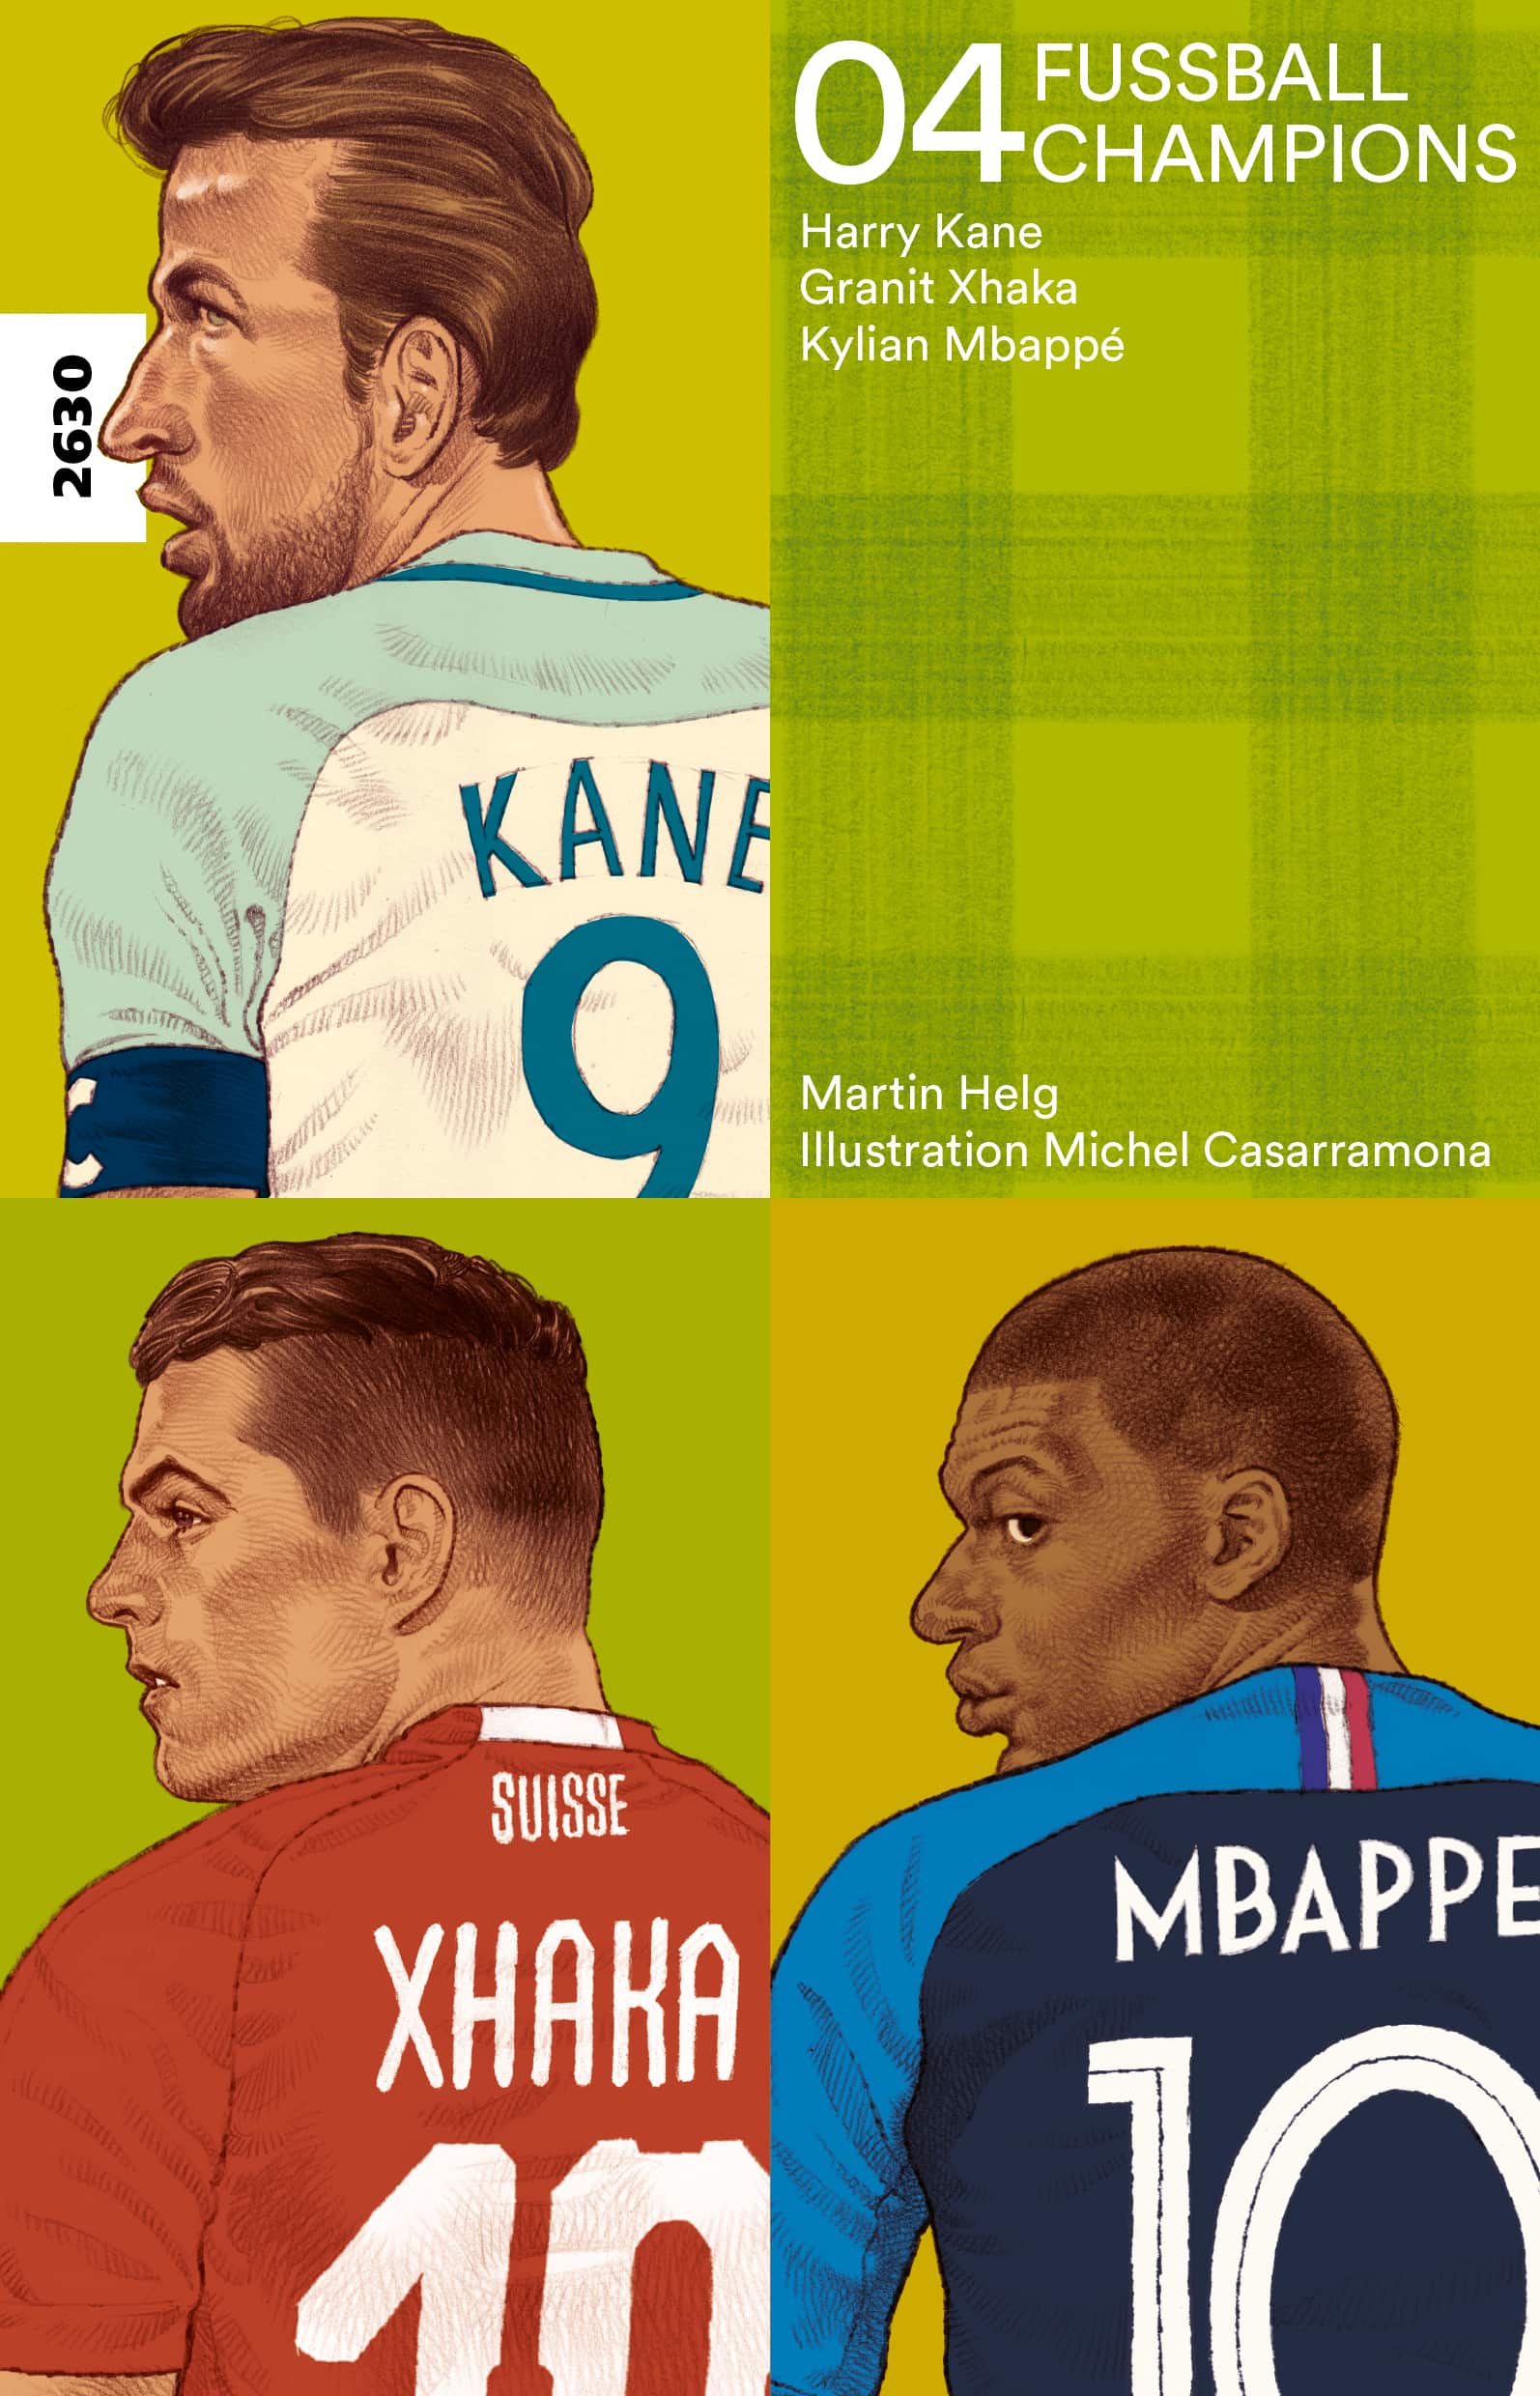 Fussballchampions 04 – Harry Kane, Granit Xhaka, Kylian Mbappé